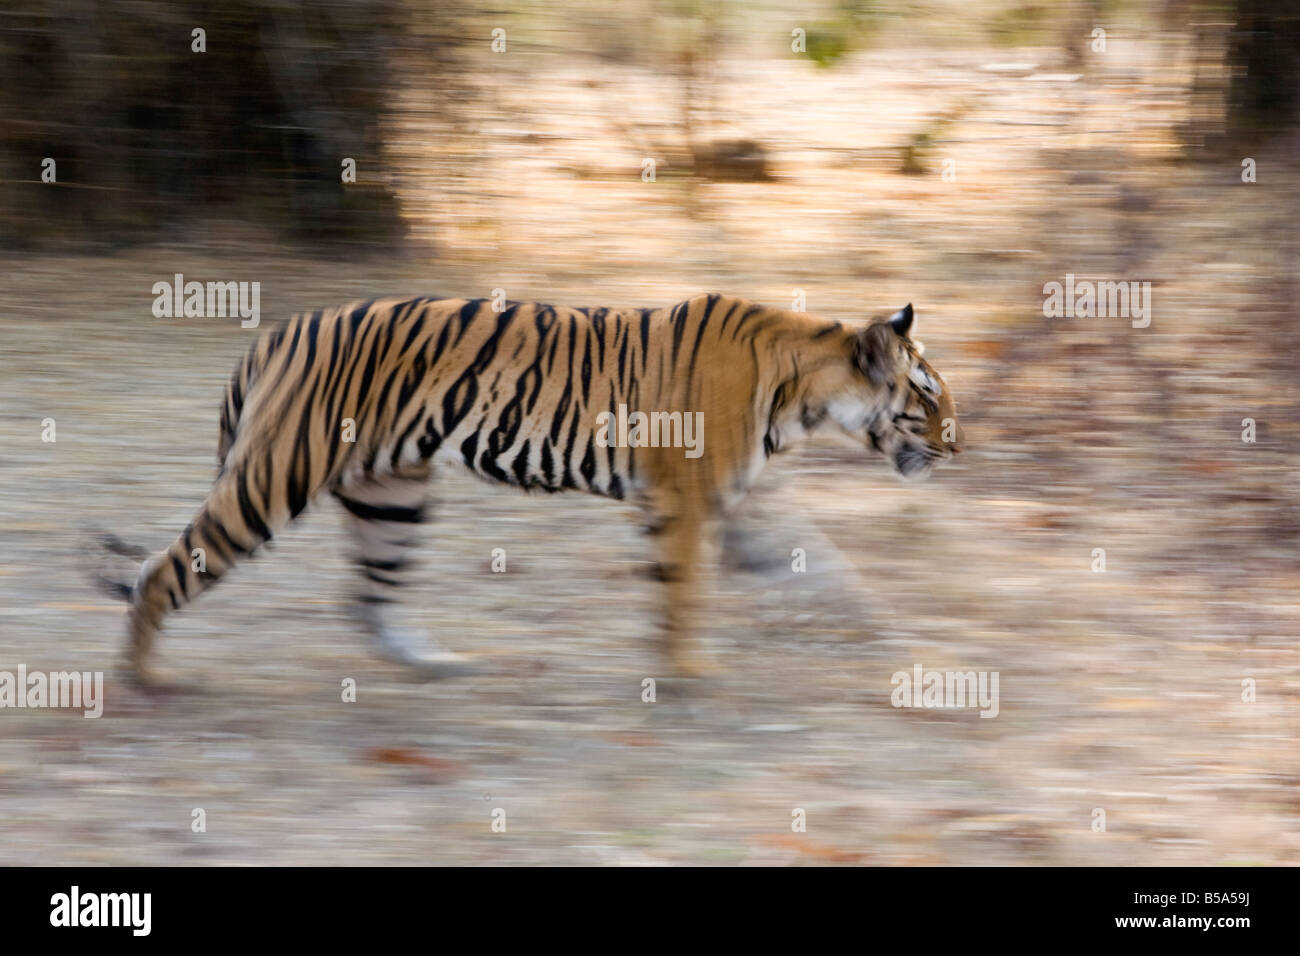 Indian Tiger (Bengal tiger) (Panthera tigris tigris), Bandhavgarh National Park, Madhya Pradesh state, India Stock Photo